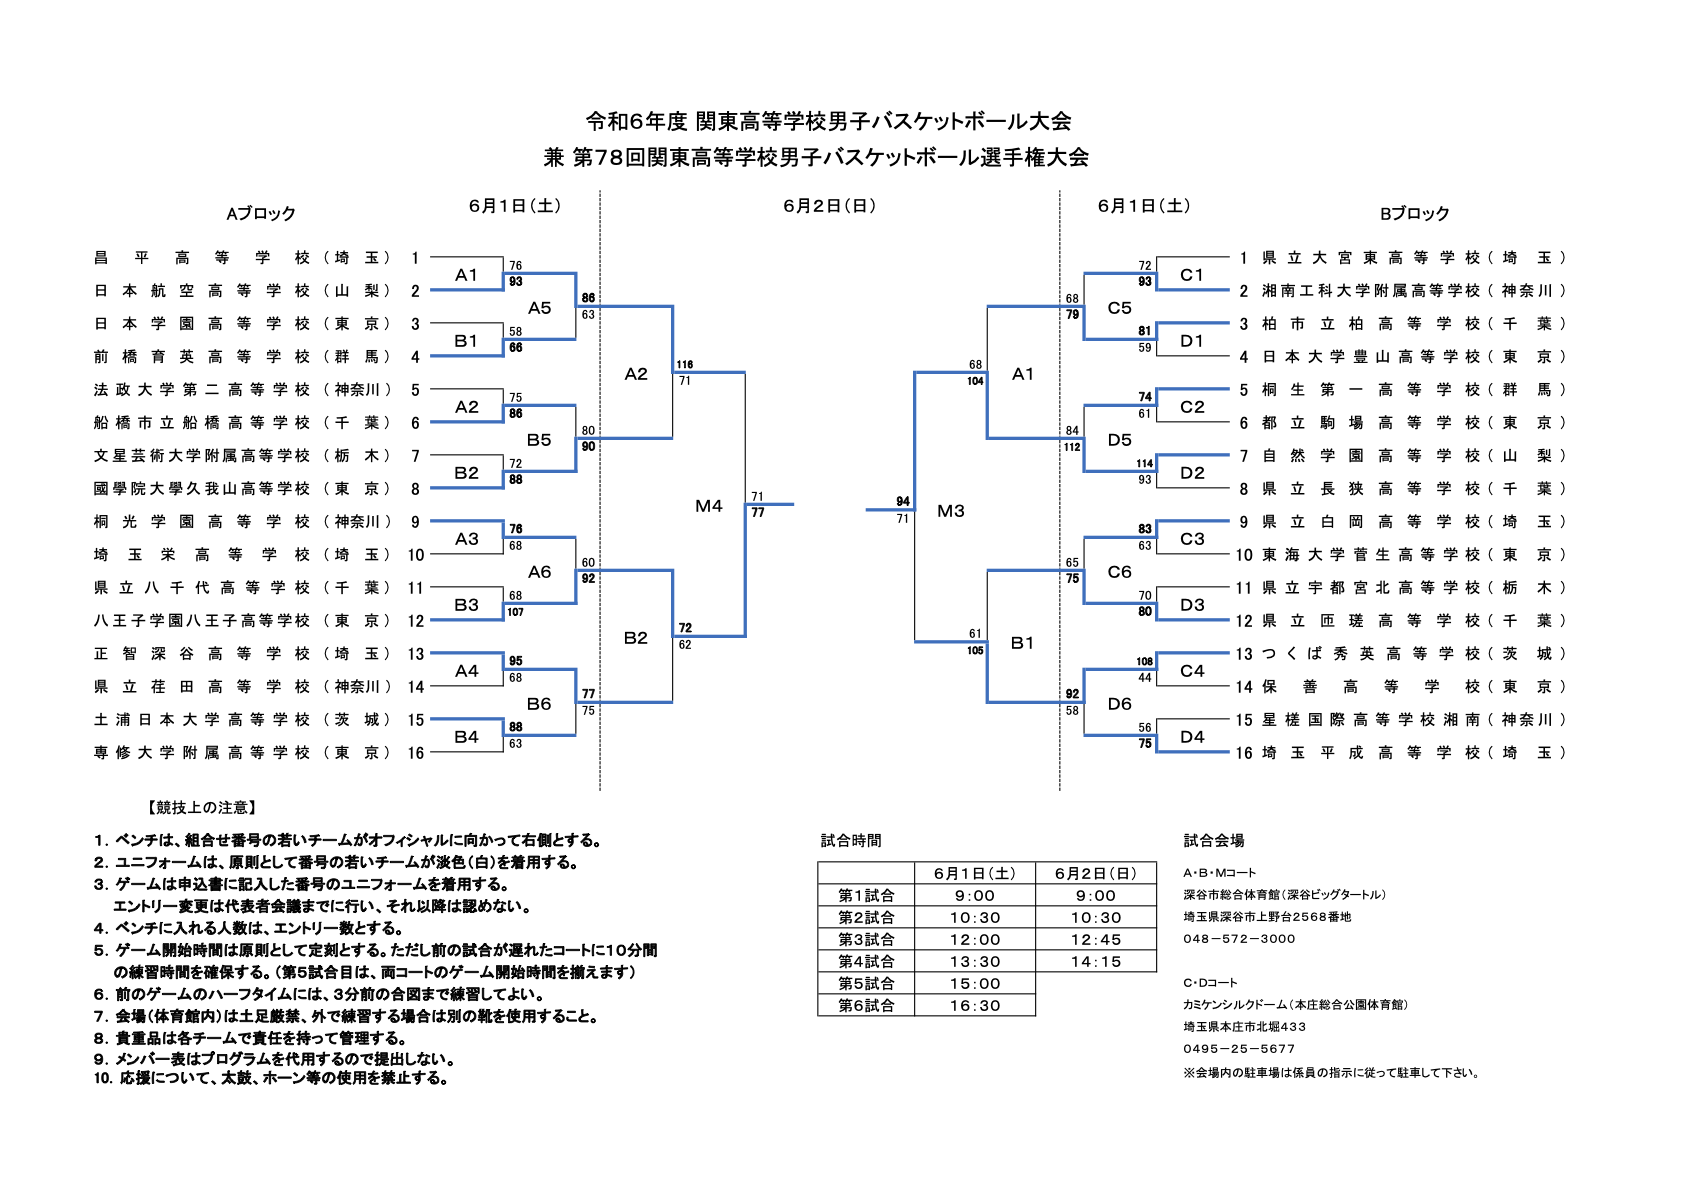 06_man_kanto_tournament